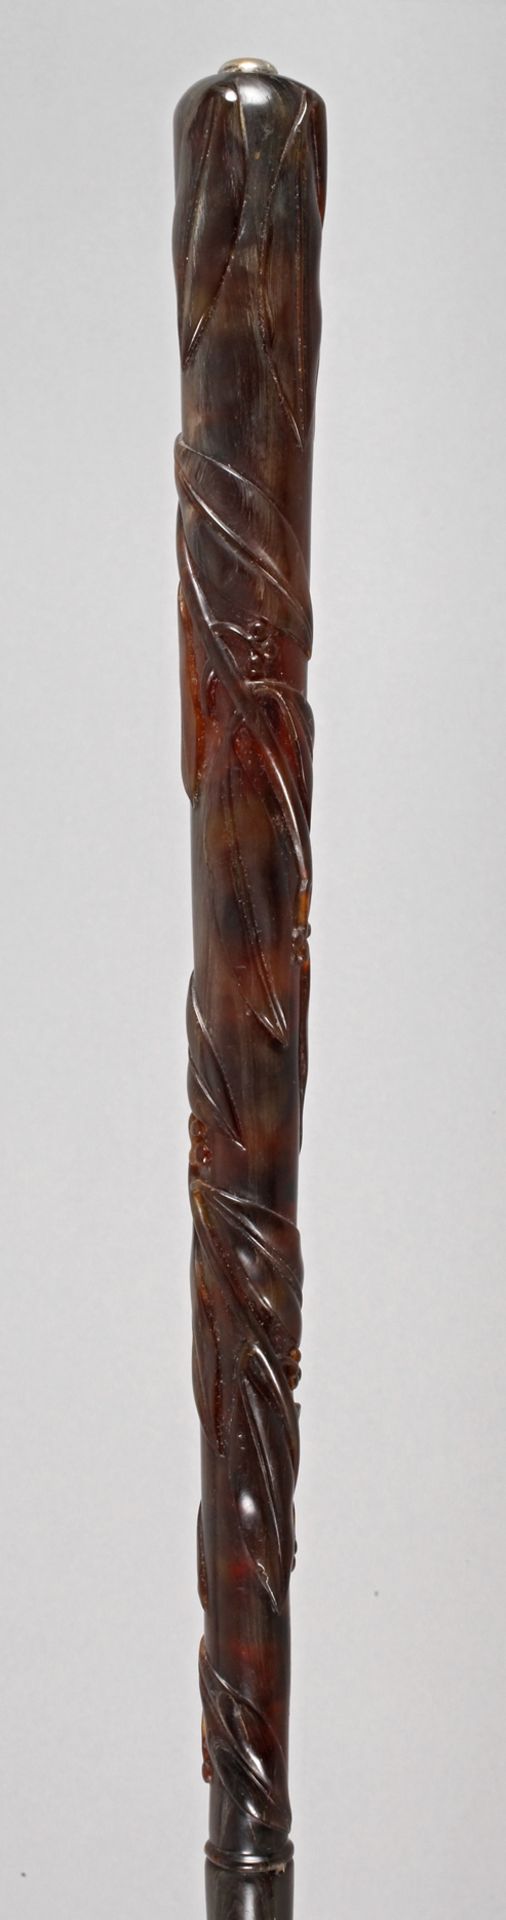 Feiner Spazierstock Schildpatt um 1880, hoher, konisch zulaufender Knauf aus beschnitztem Schildpatt